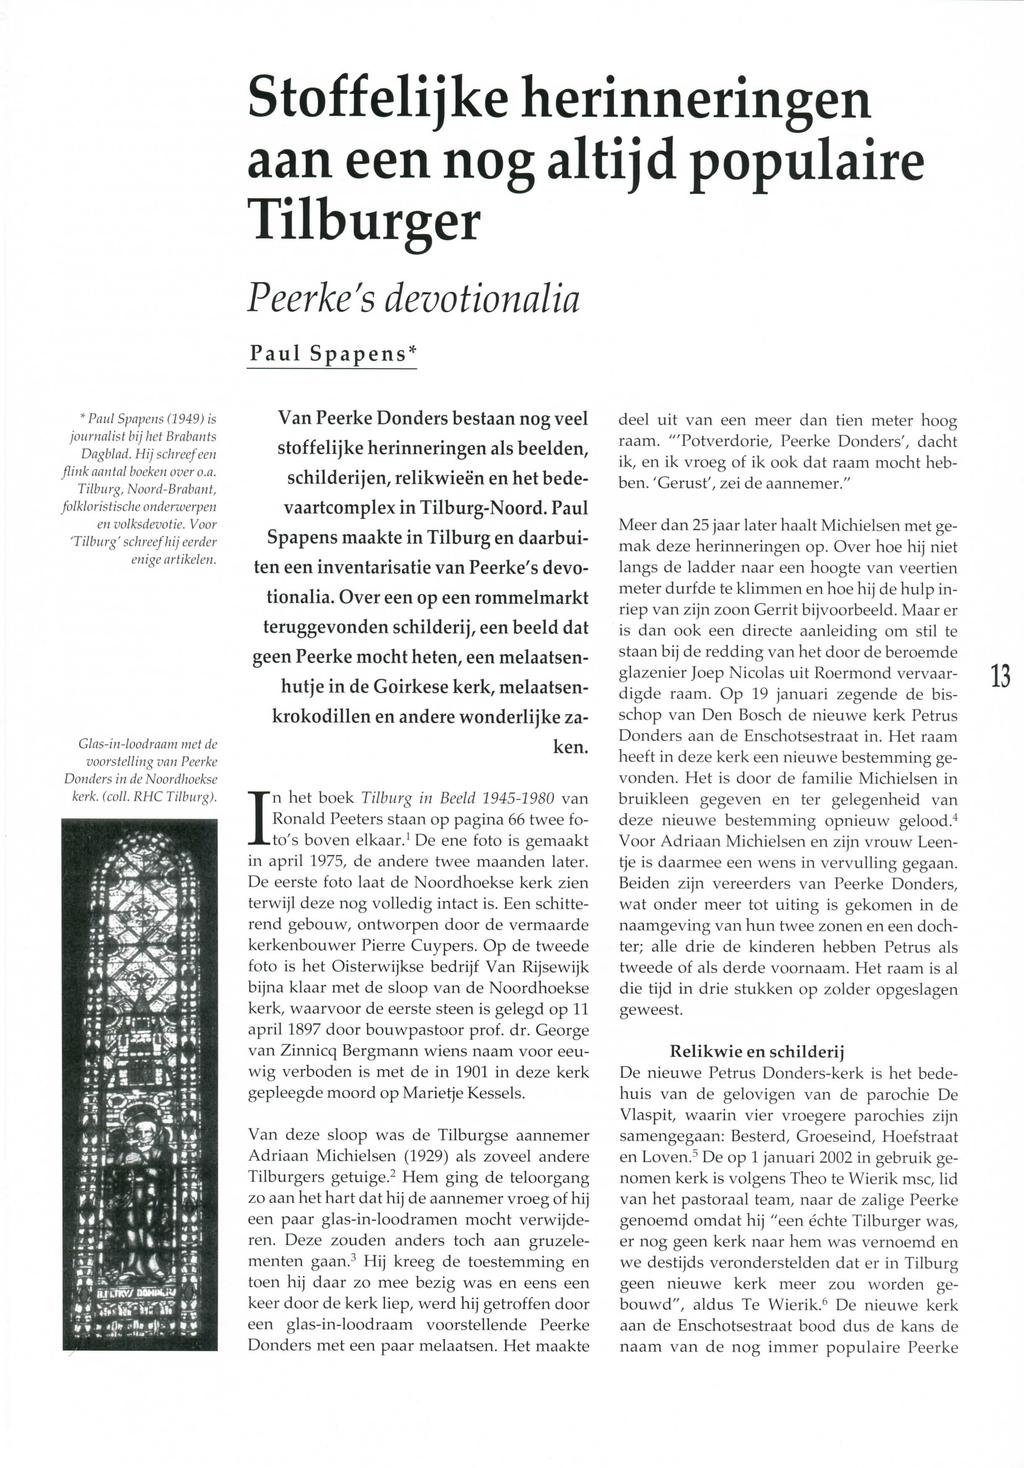 Stoffelijke herinneringen aan een nog altijd populaire Tilburger Peerke's devotionalia Paul Spapens' * Paul Spapens (1949) is journalist bij het Brabants Dagblad.